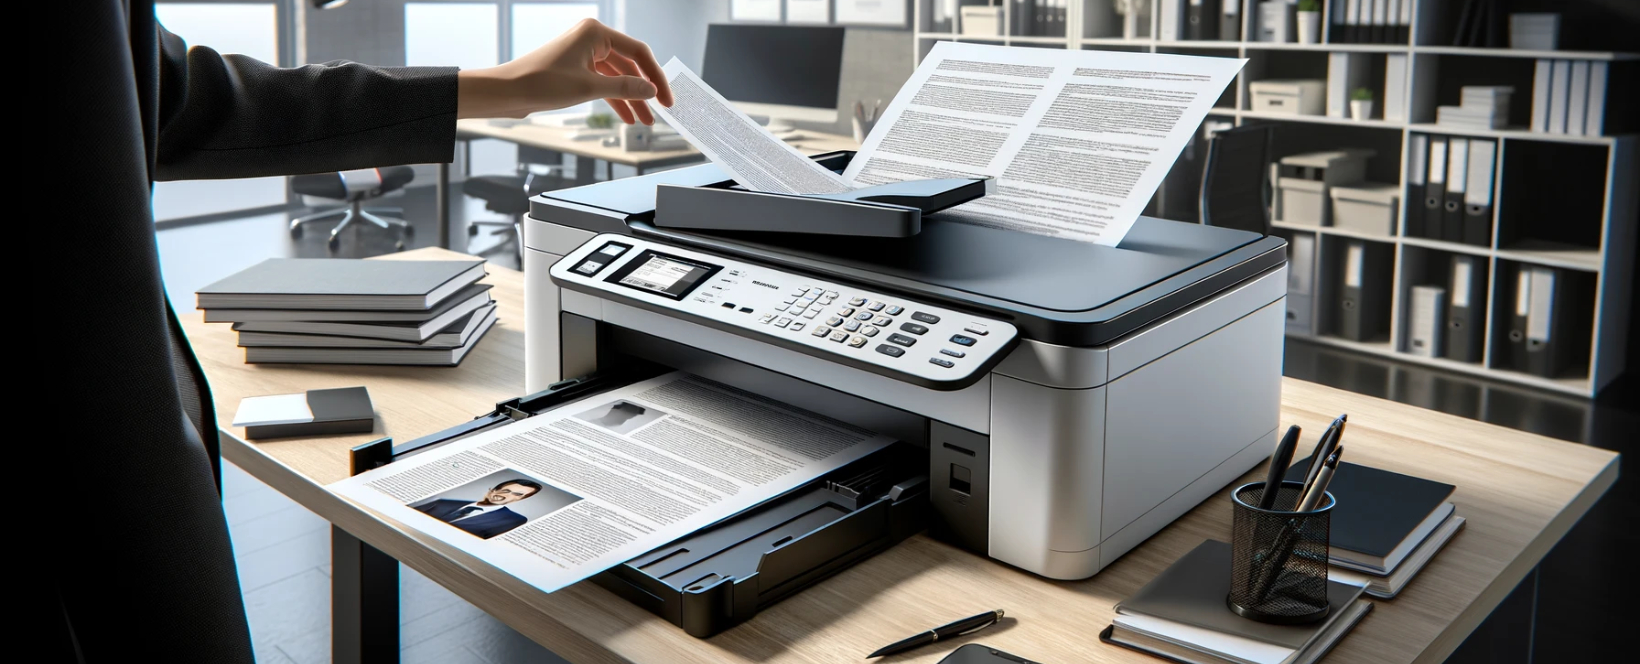 como escanear un documento en una impresora